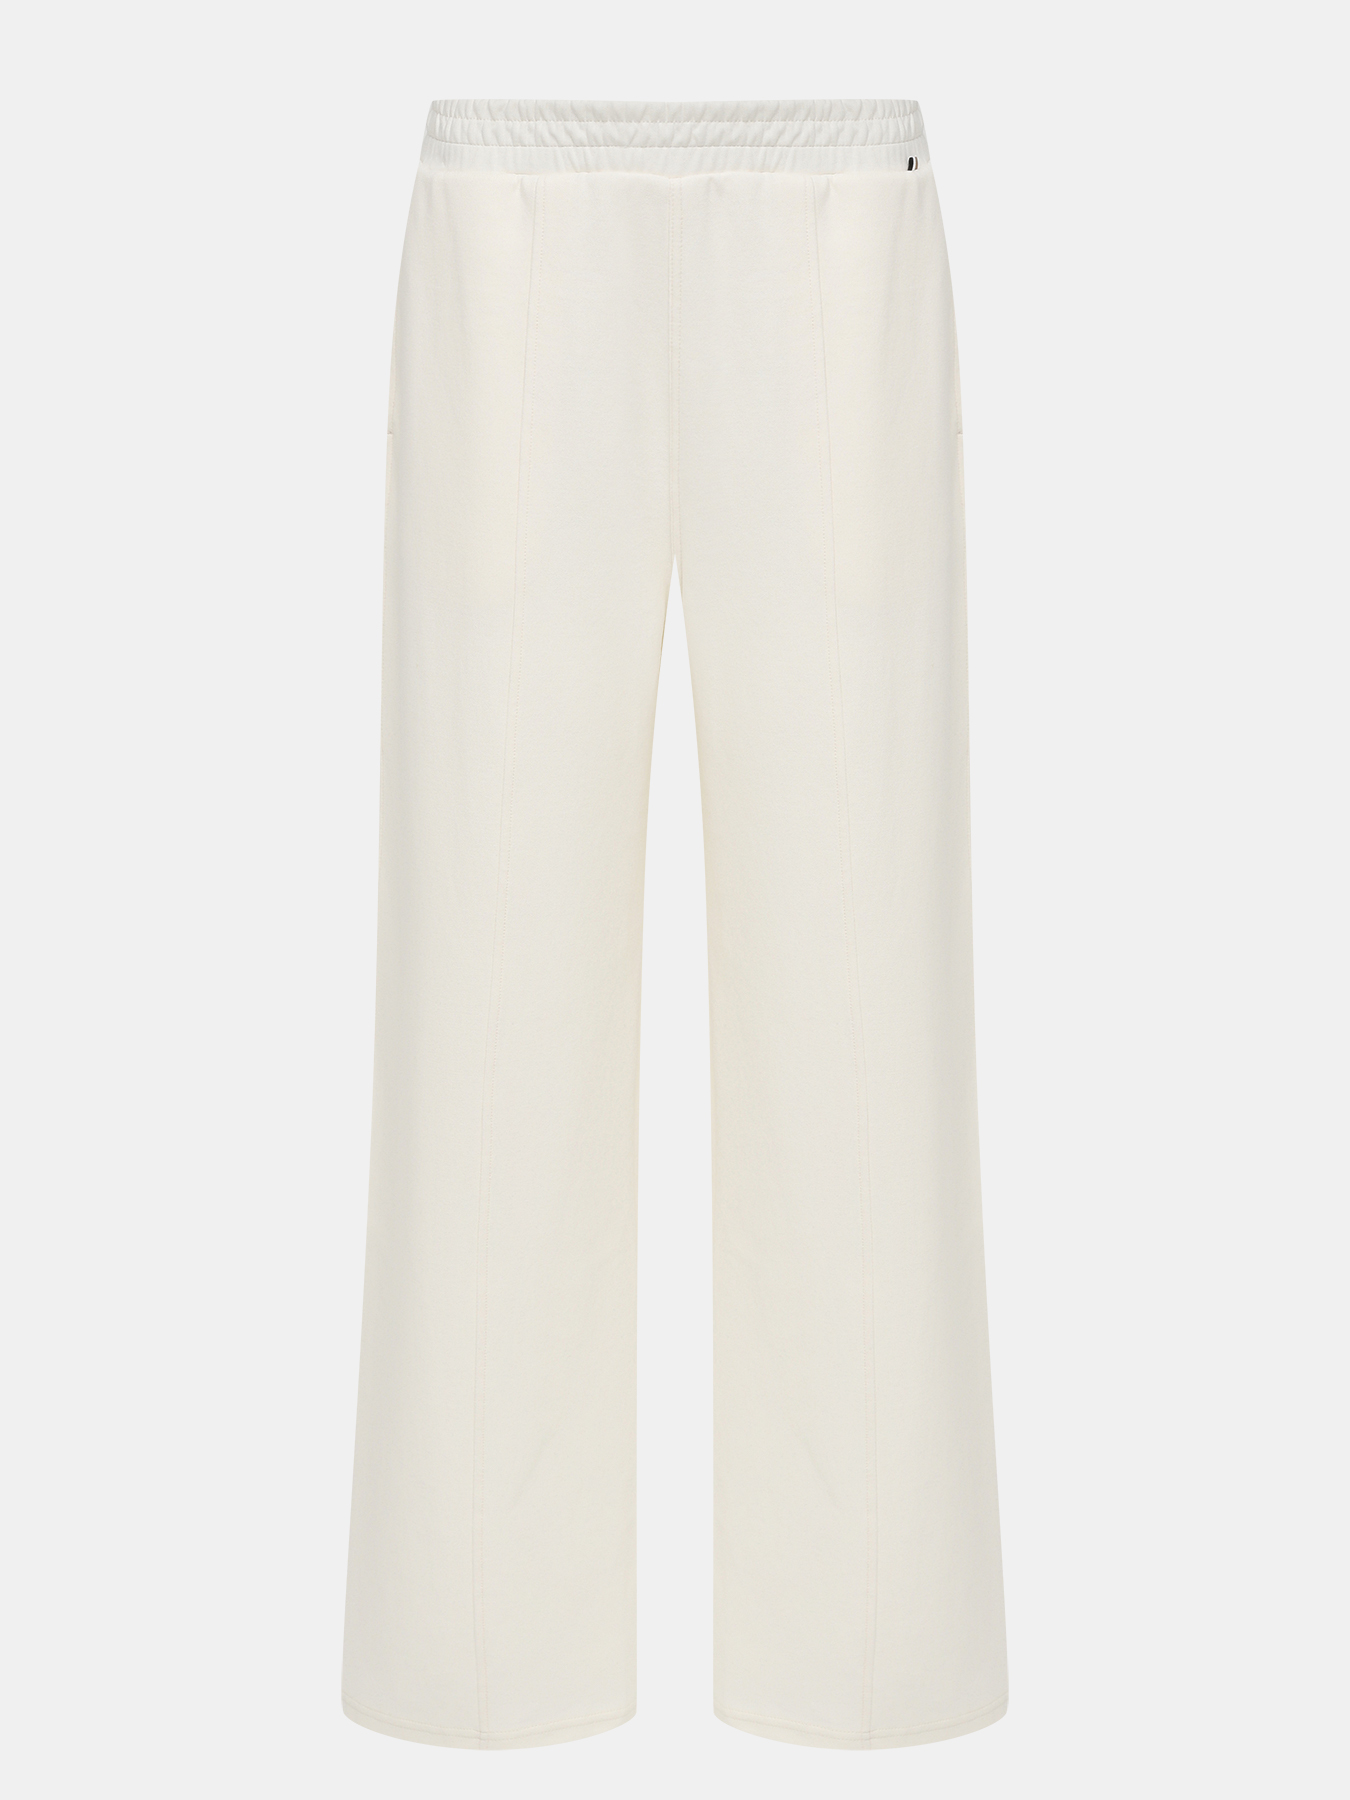 Спортивные брюки Elsam BOSS 424155-041, цвет белый, размер 40-42 - фото 1